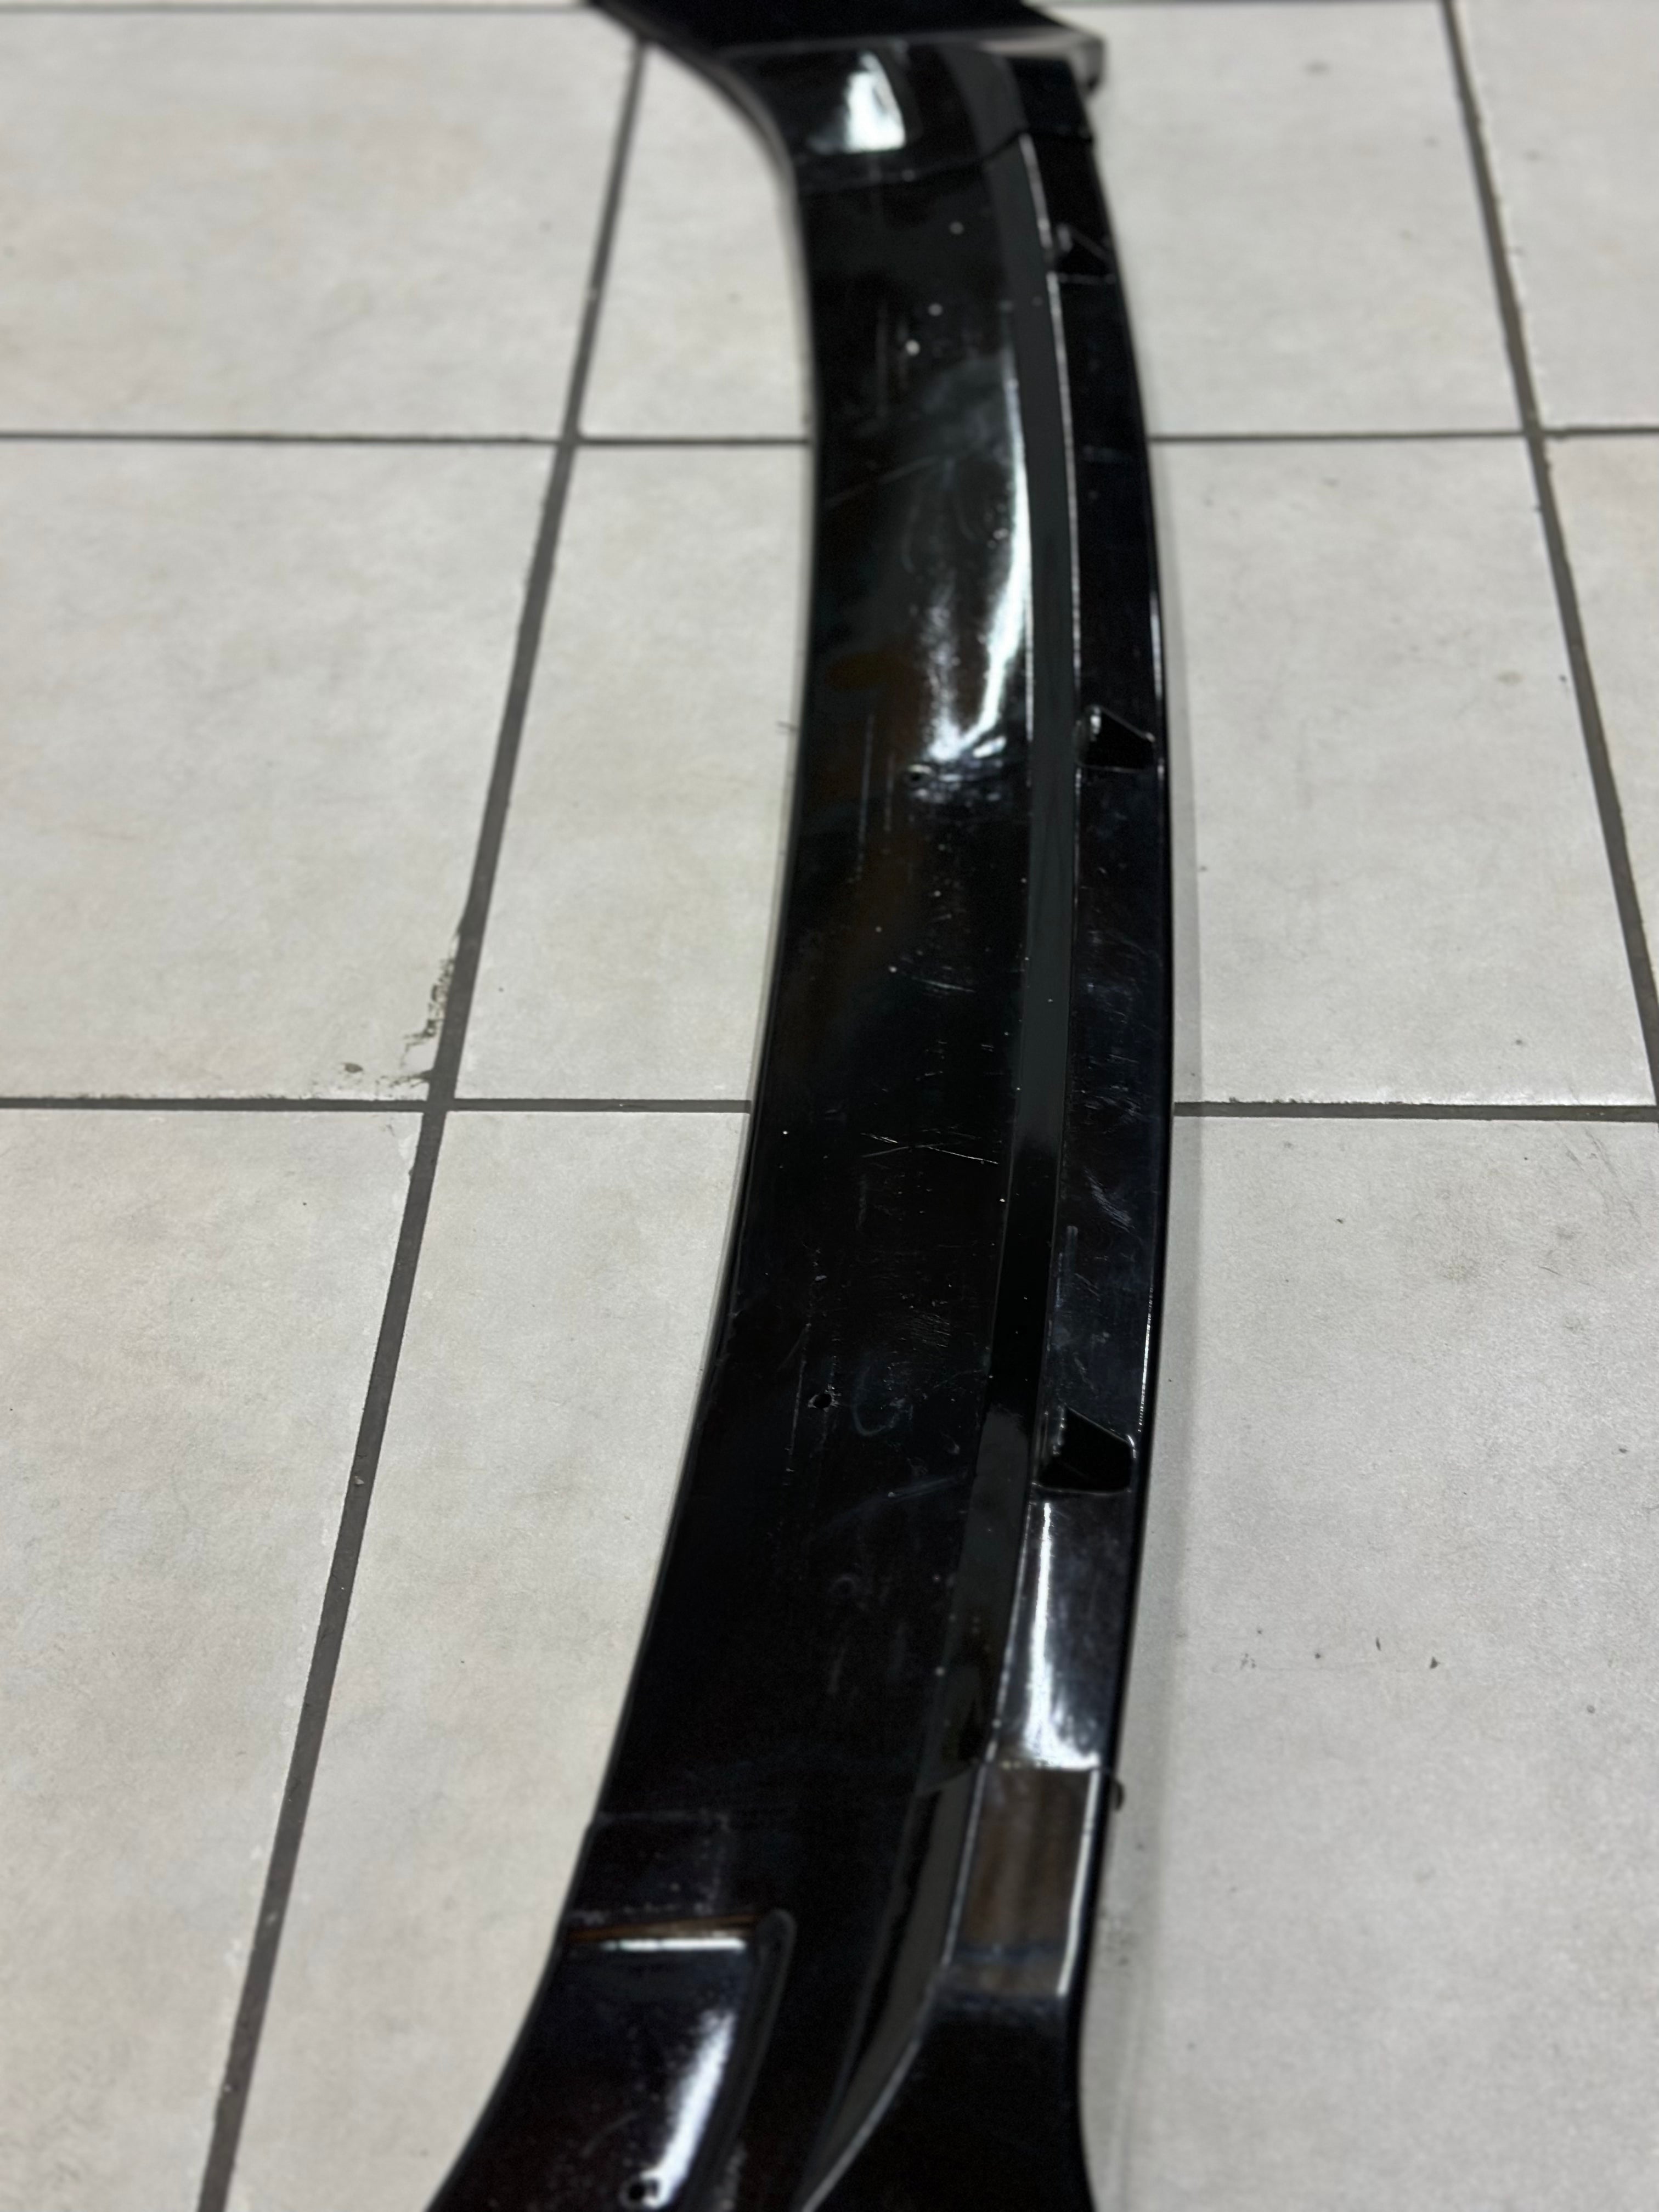 Vw MK7 plastic gloss black USED 3pce front spoiler